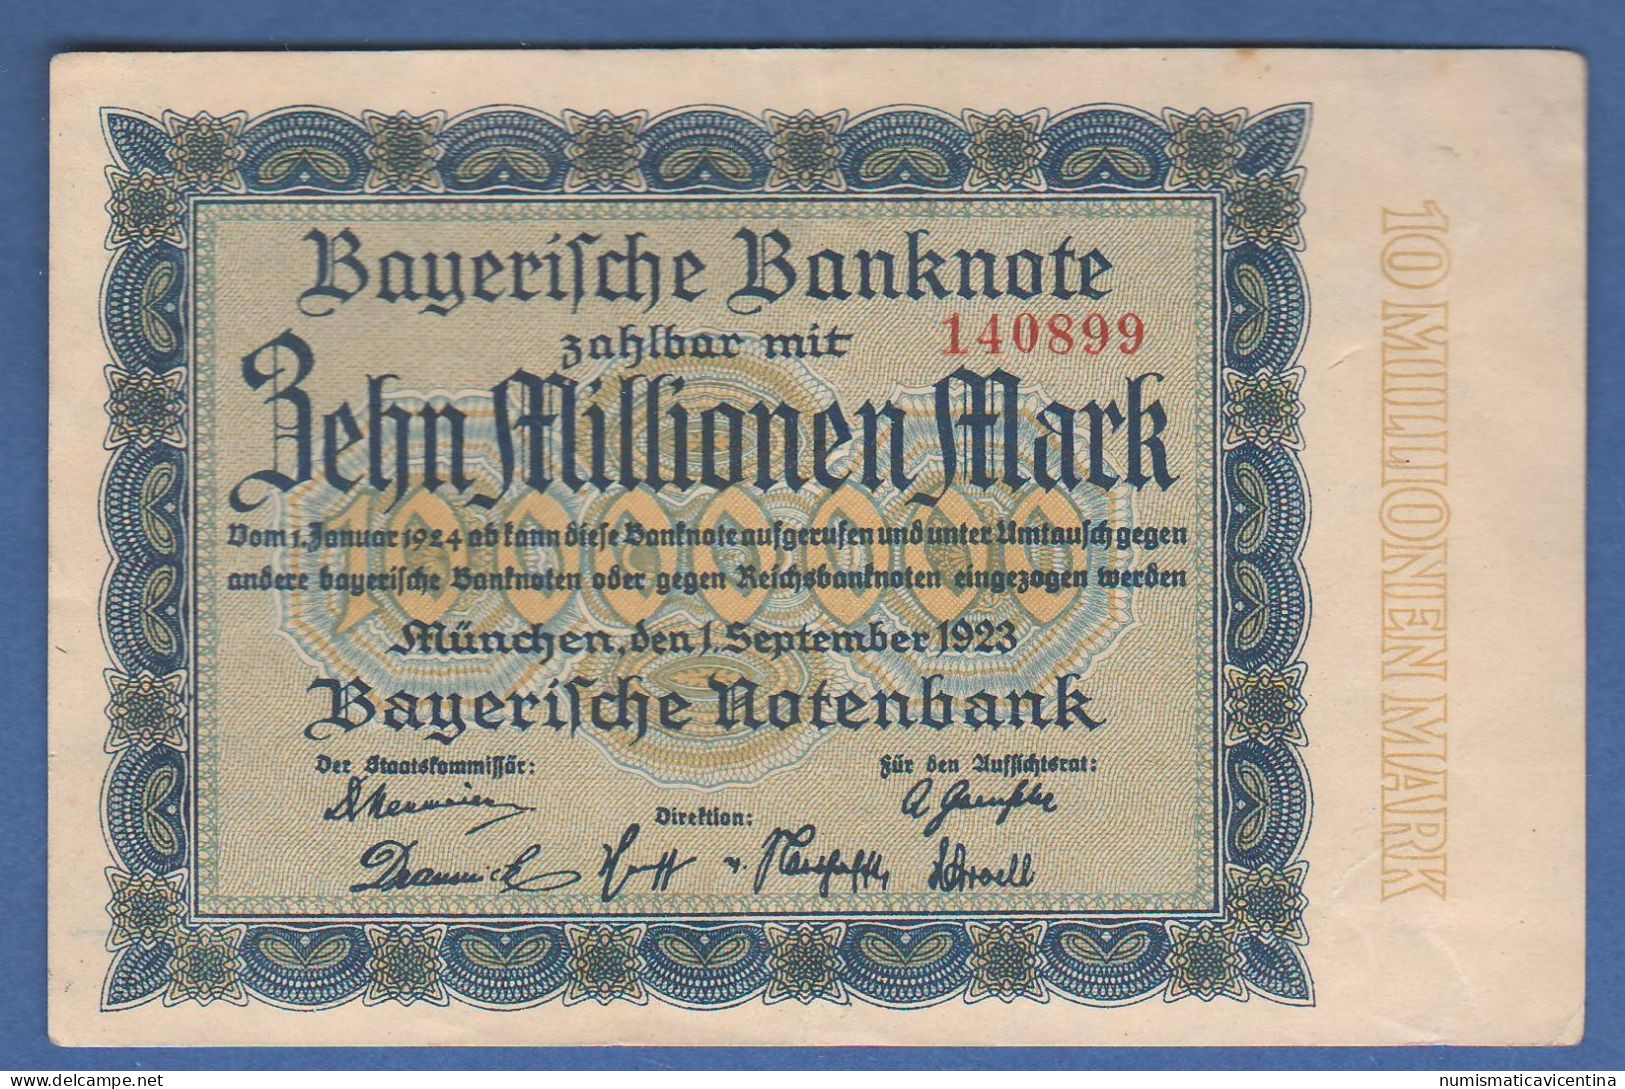 Banknote 10 Millionen Mark September 1923 Bayerische Notenbank Bayerische  Germania Banknote - Ohne Zuordnung